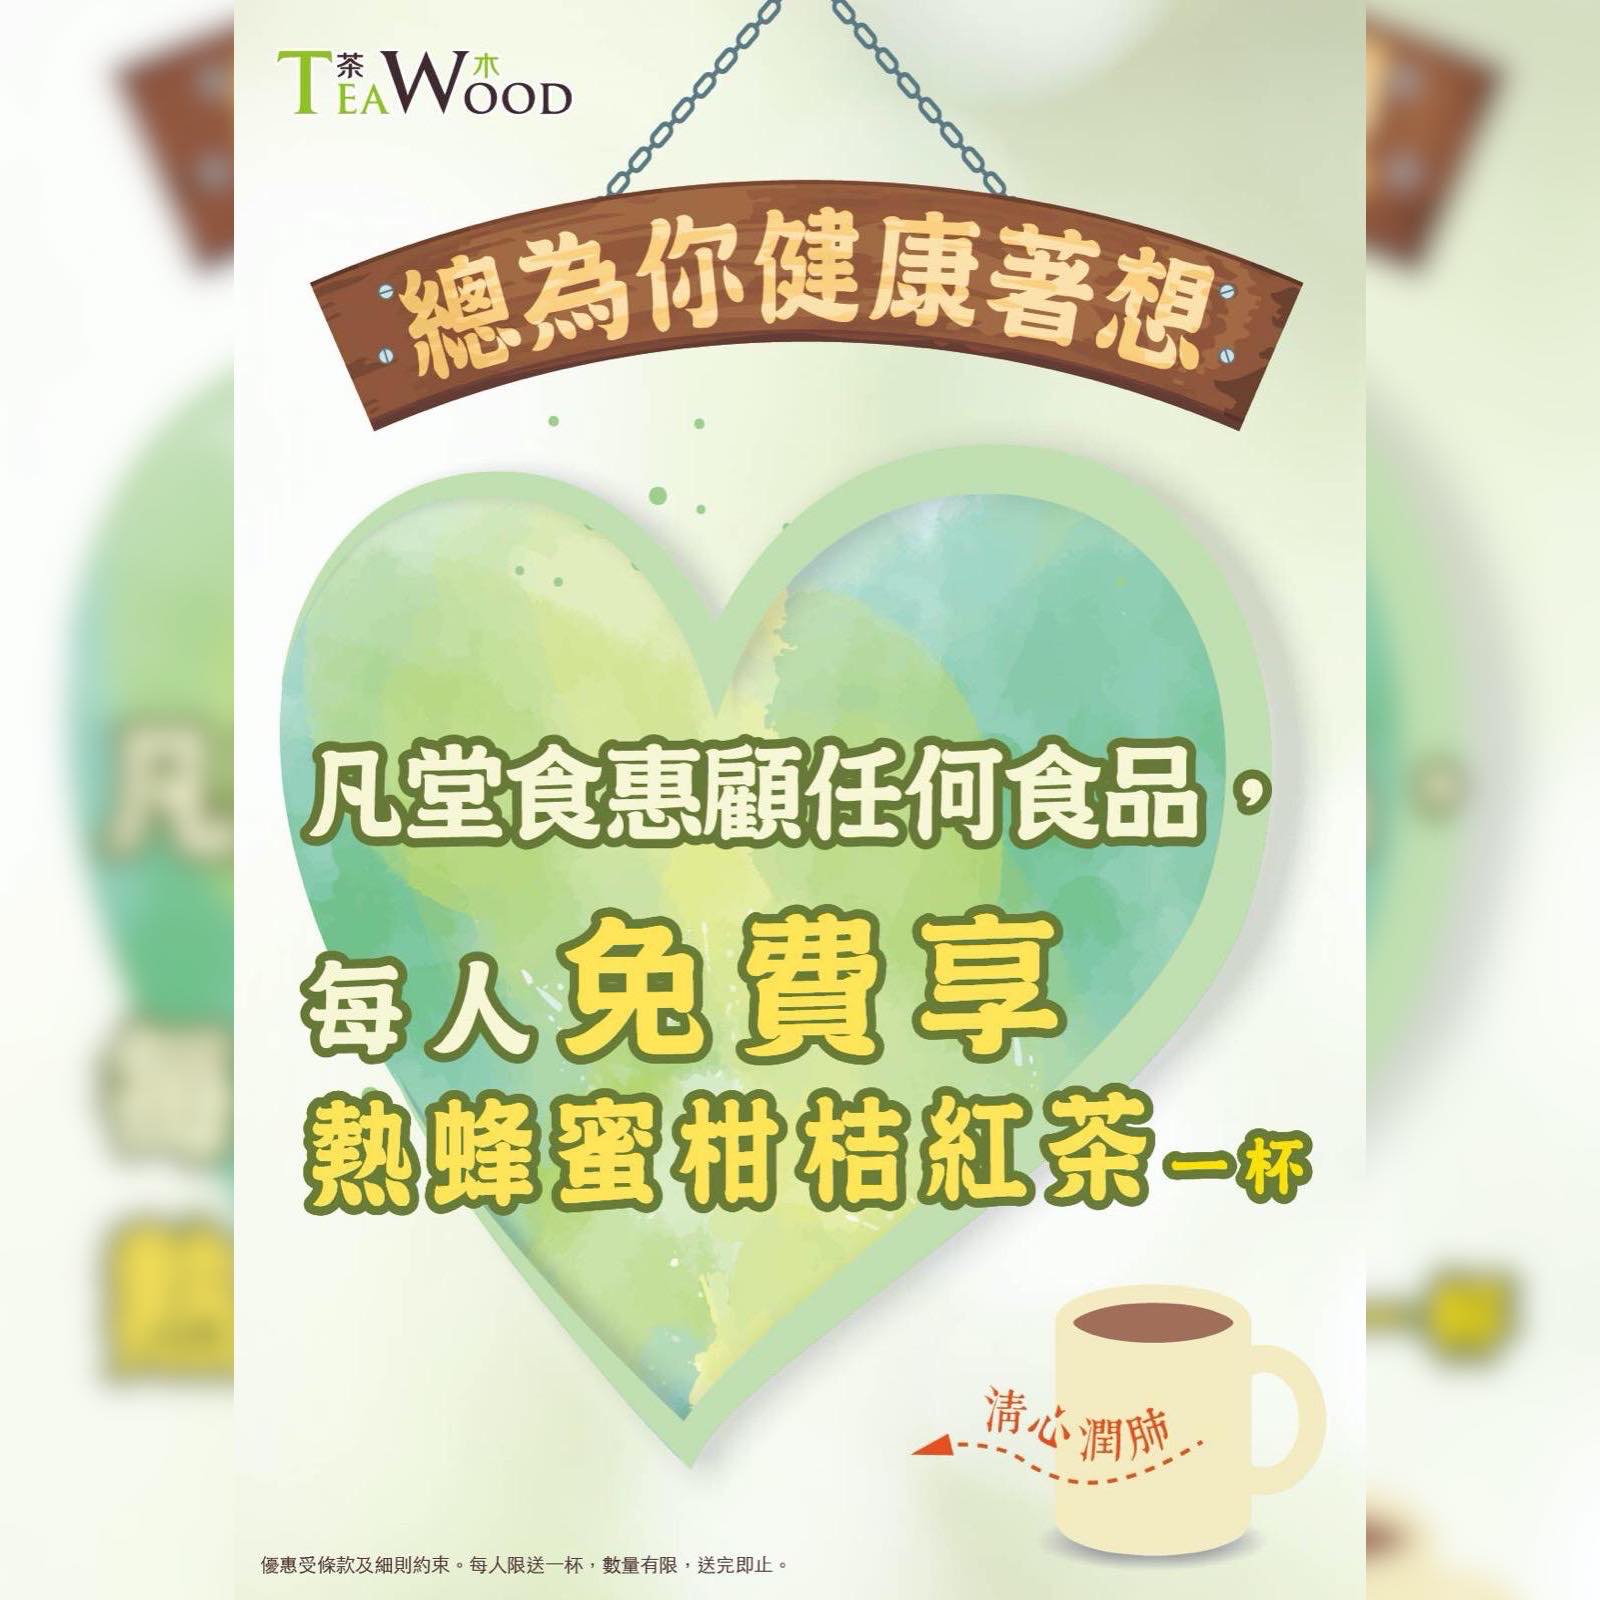 嚟緊香港嘅疫情有機會踏入高峰期……😷 茶木同大家一齊抗疫💪